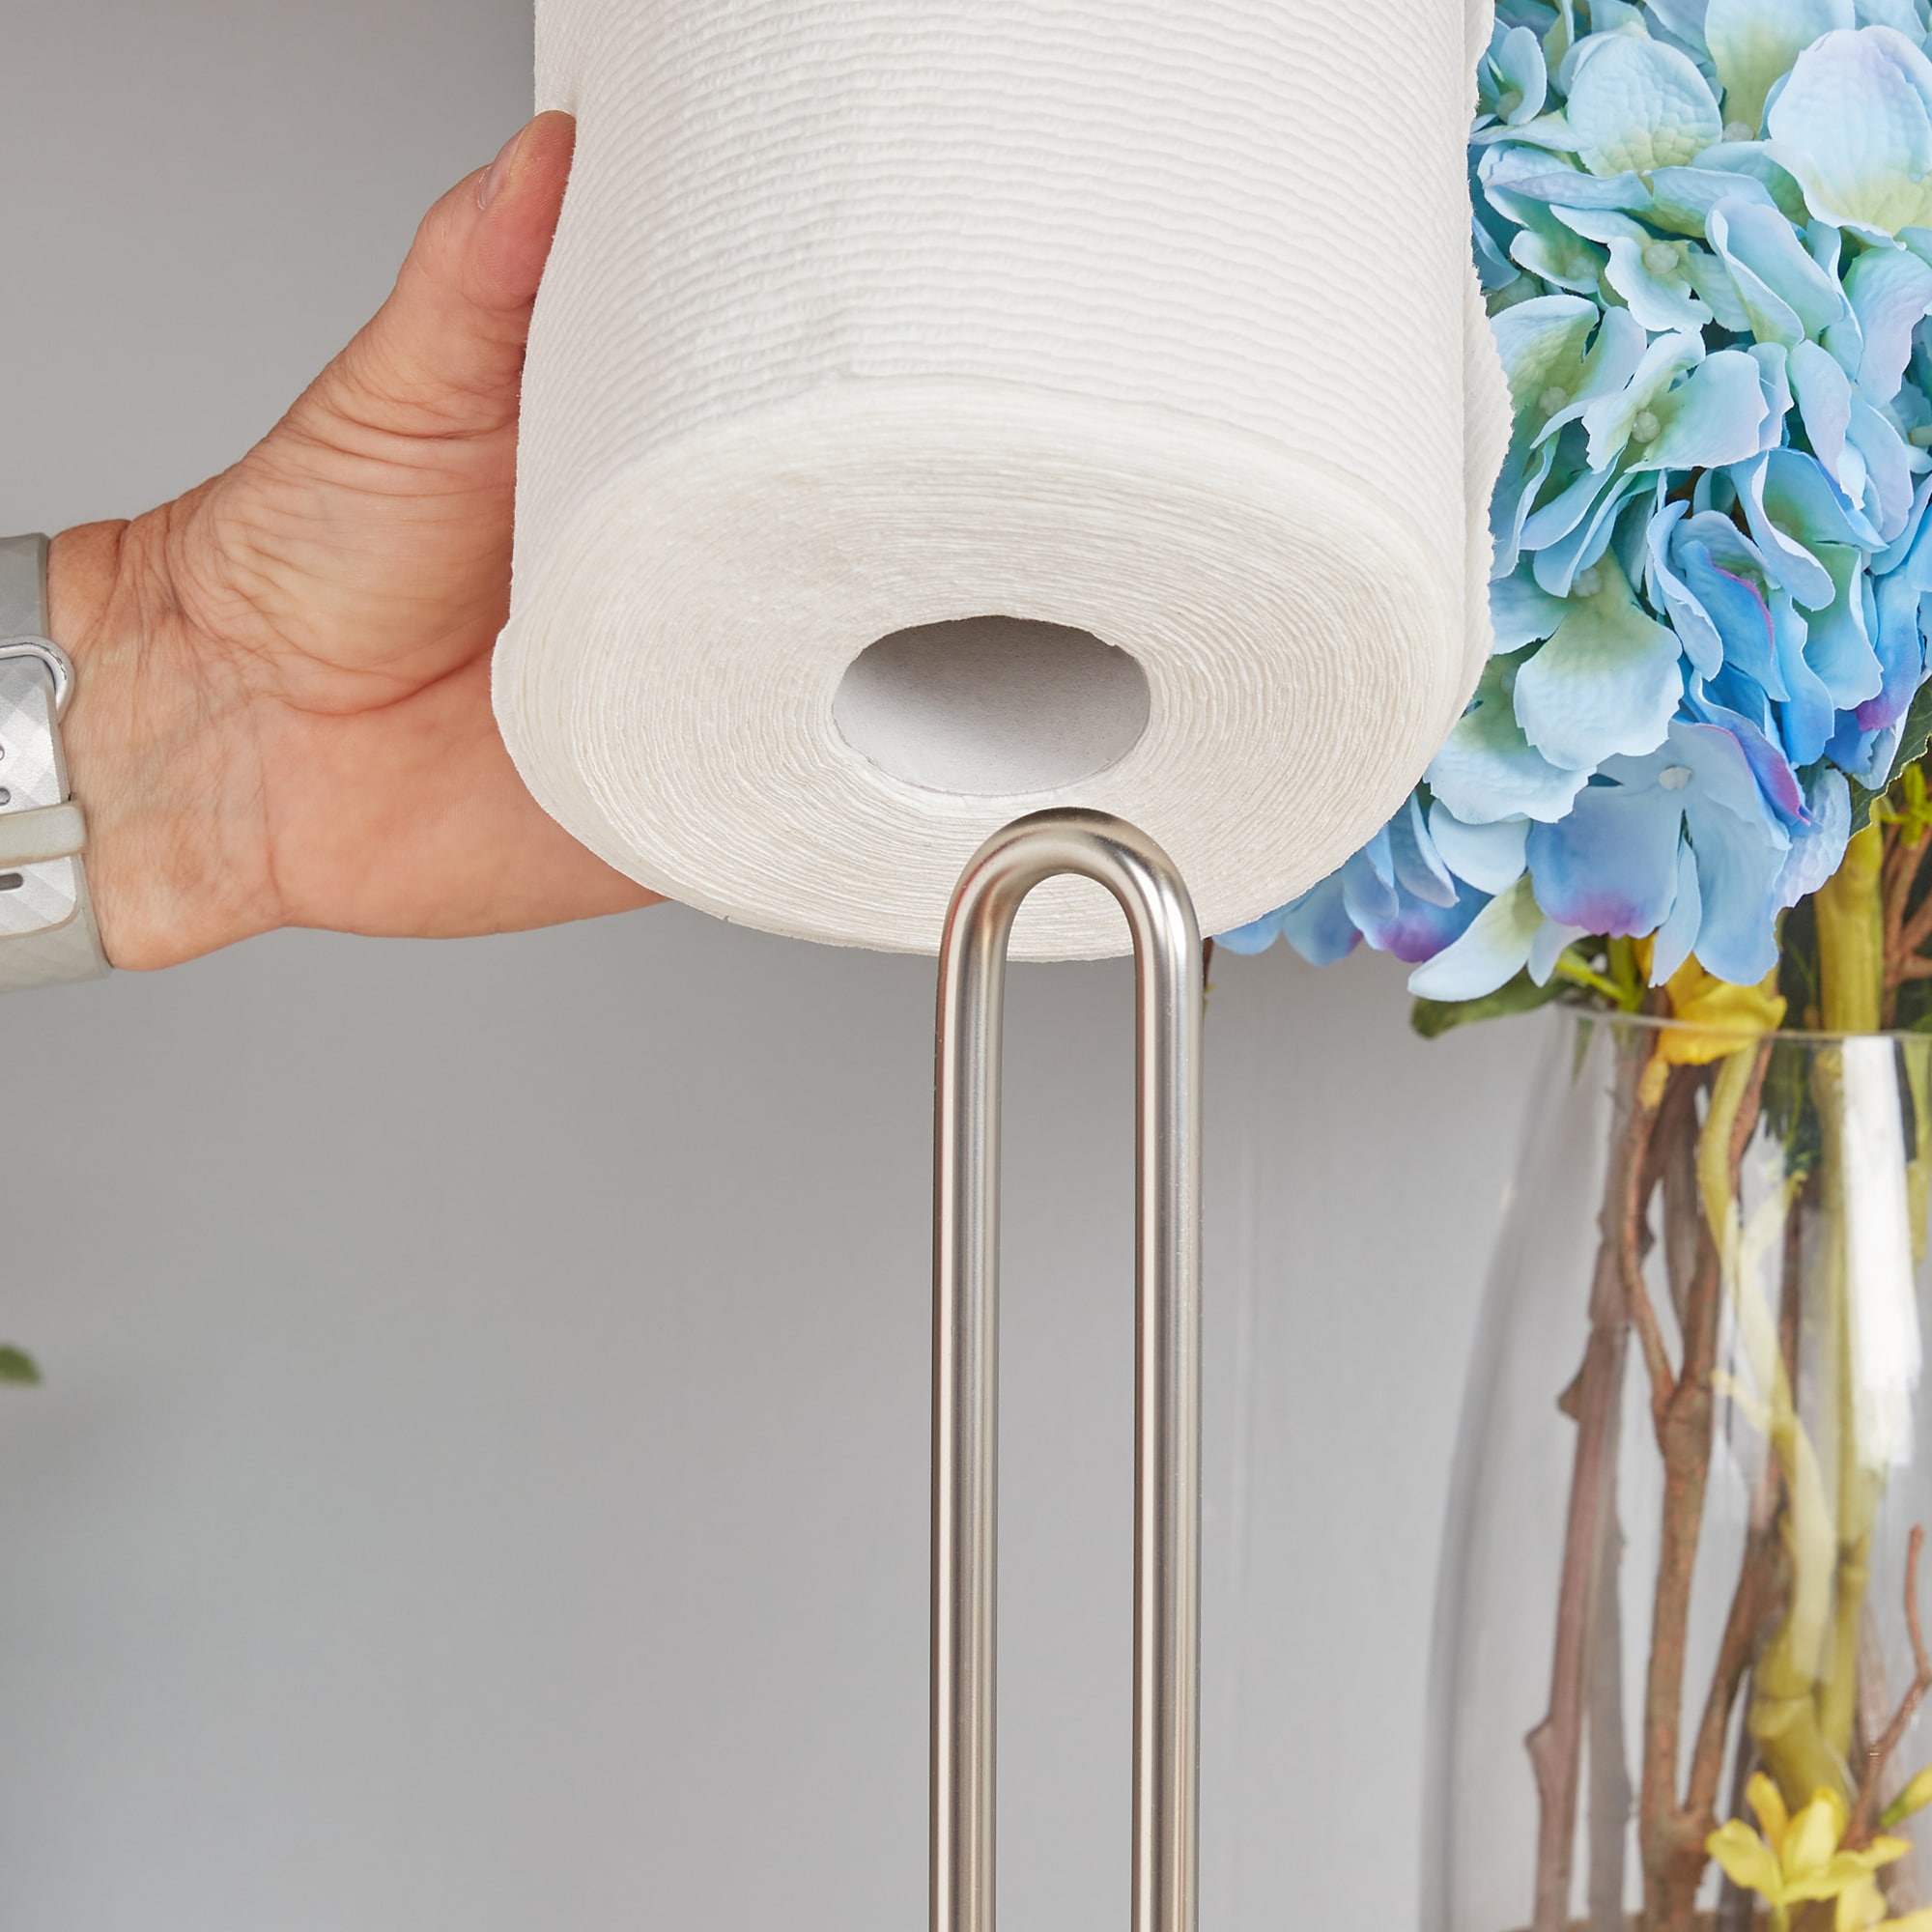 Umbra Nickel Metal Wall-mount Paper Towel Holder